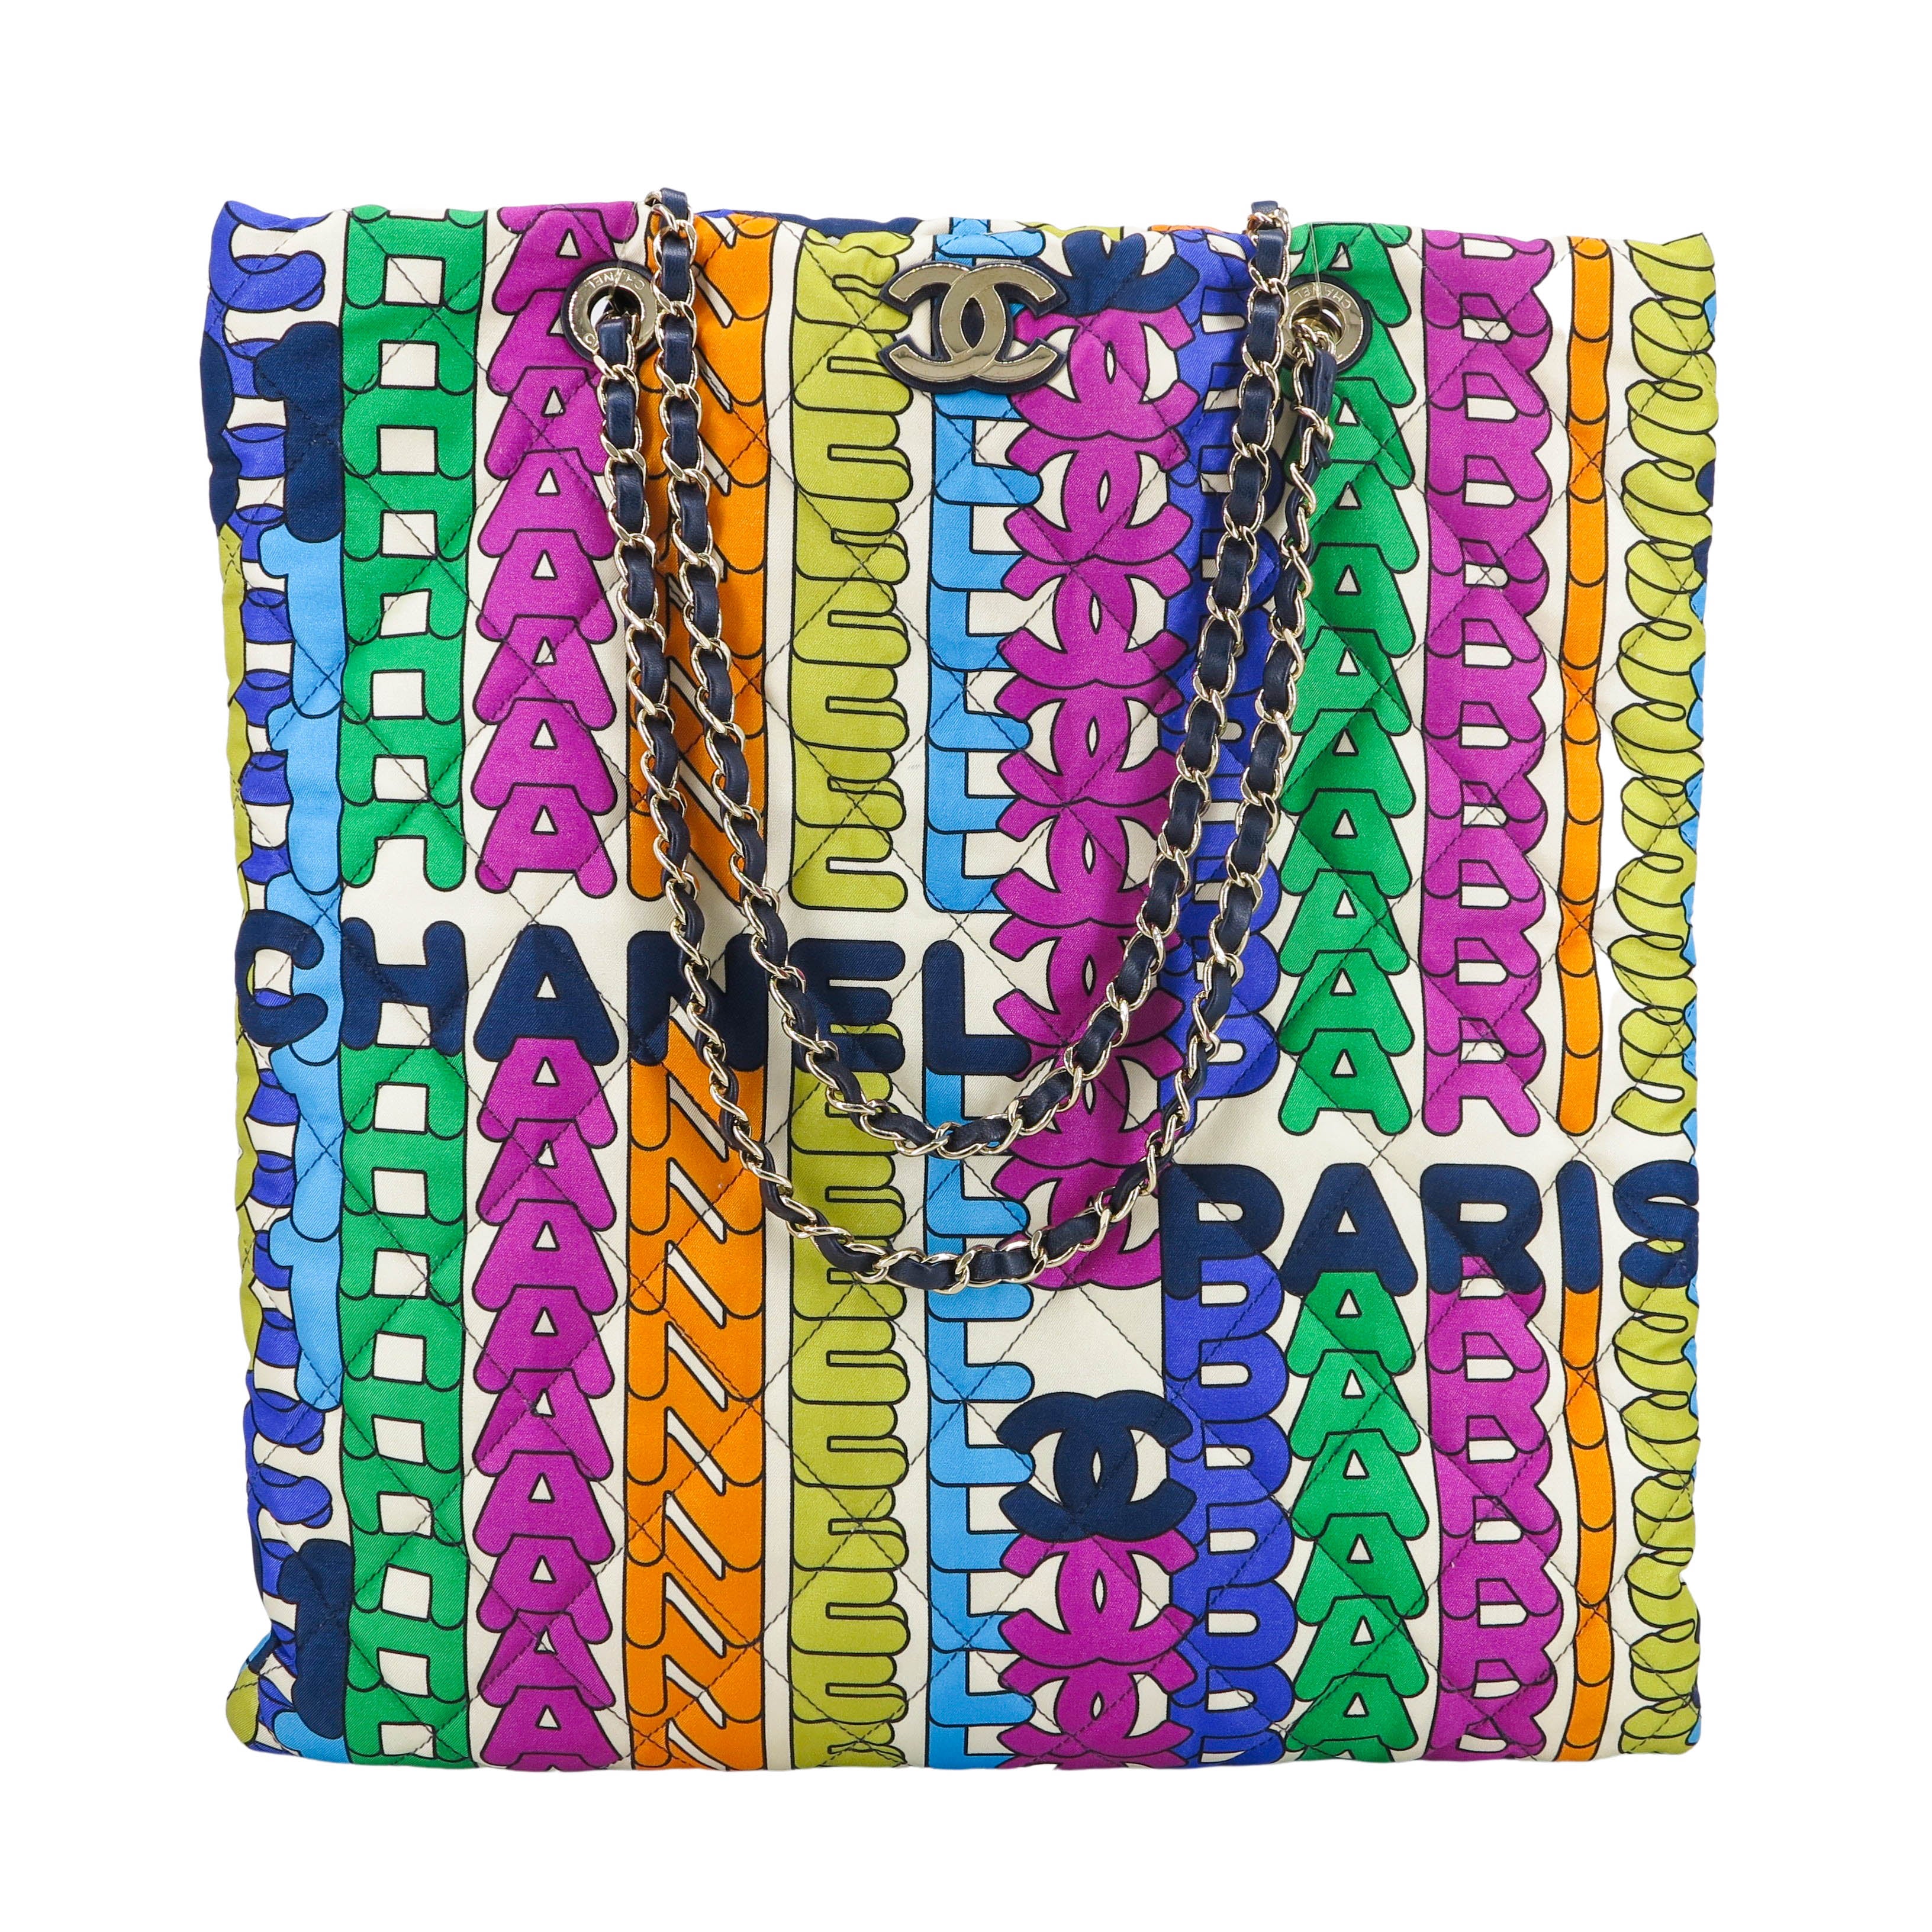 Chanel Rainbow Bag - 23 For Sale on 1stDibs